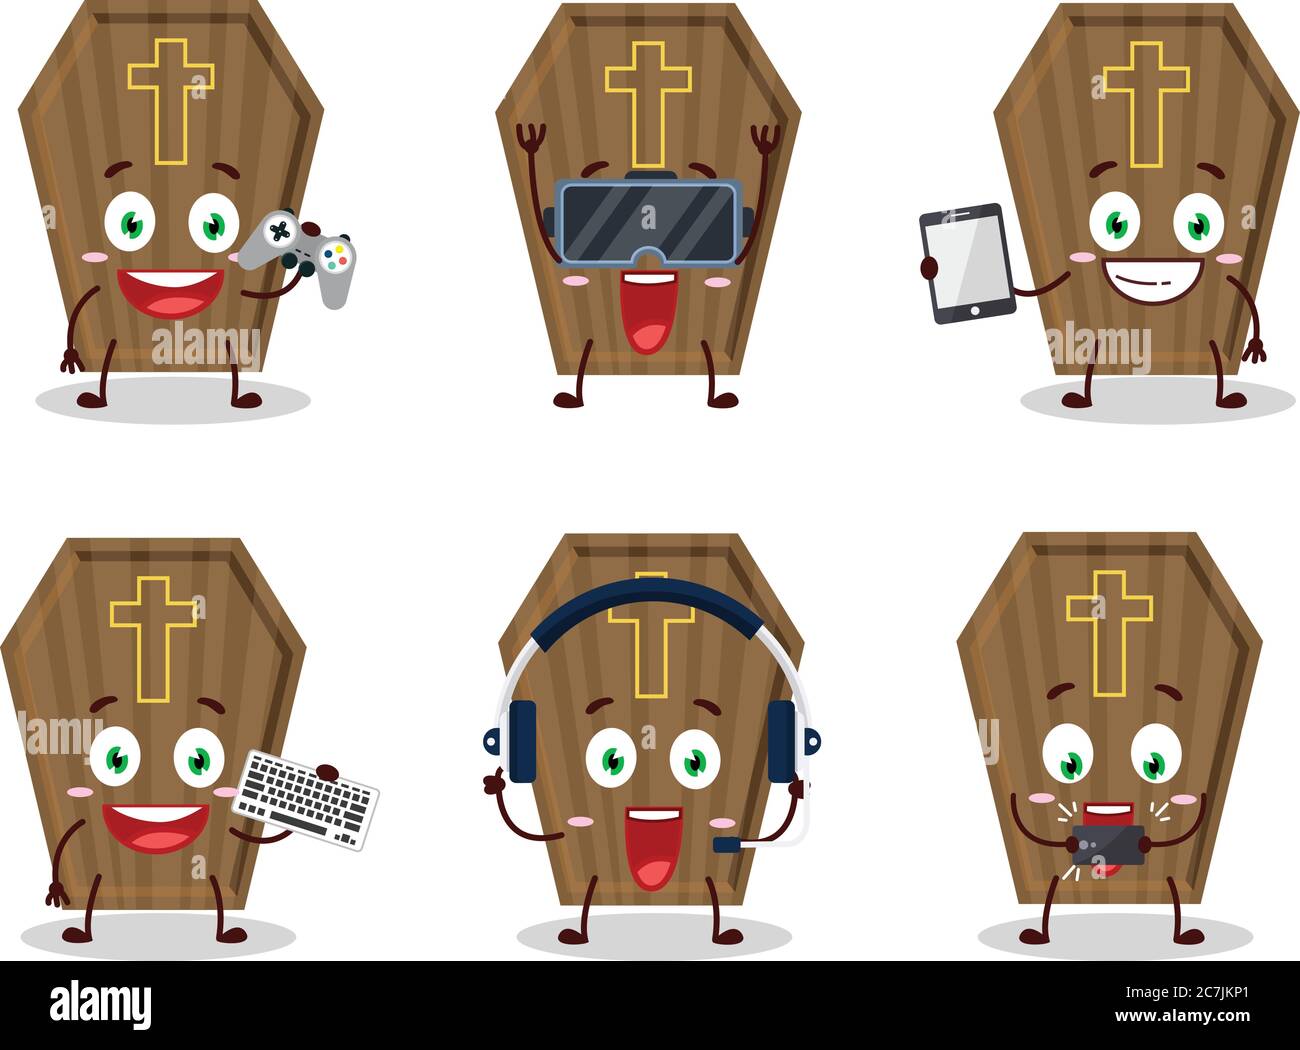 Le personnage de dessin animé de cercueil joue à des jeux avec diverses émoticônes mignons Illustration de Vecteur